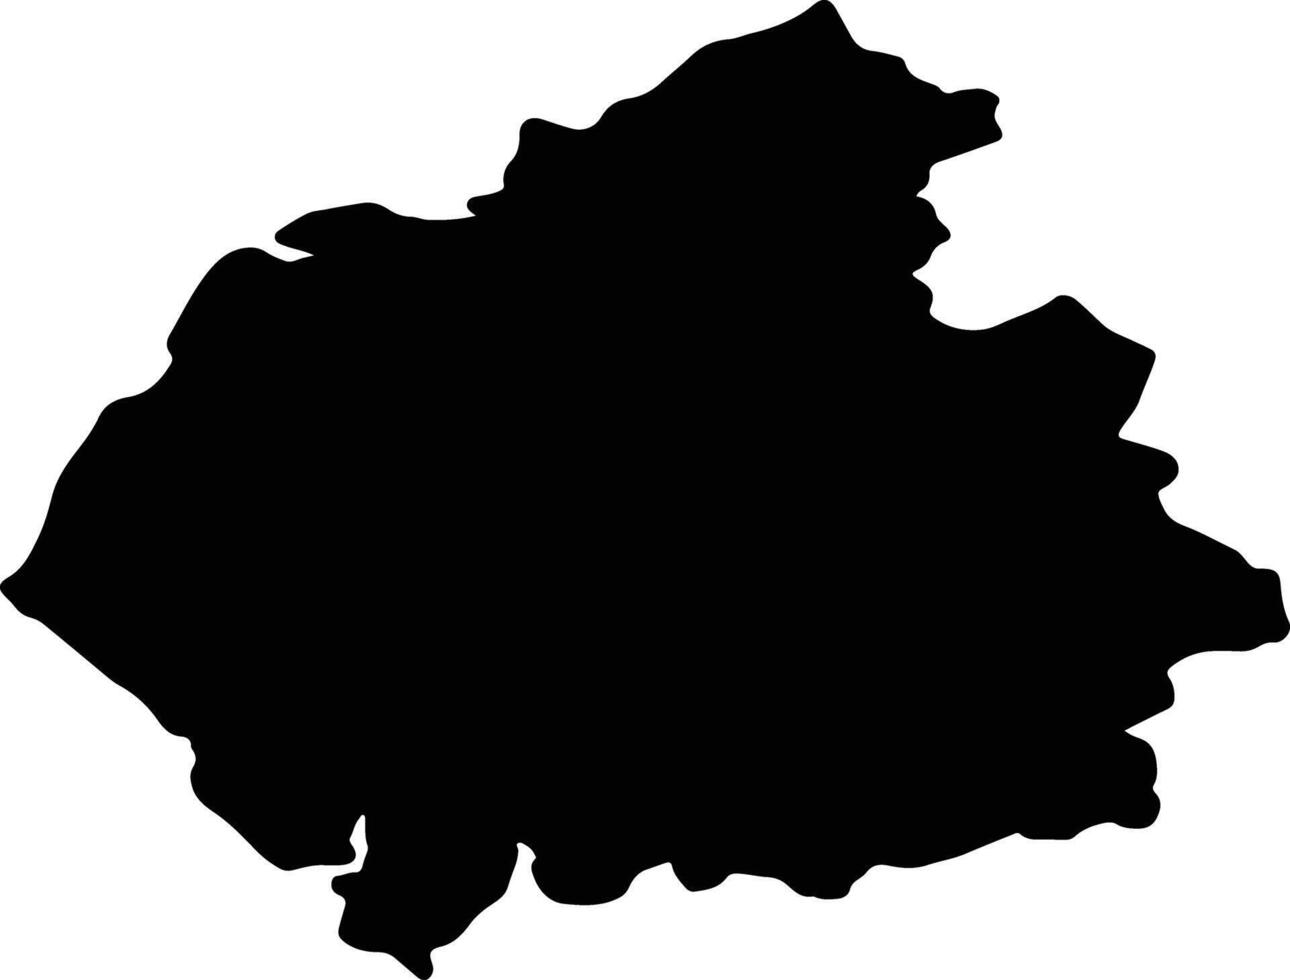 cumbria Verenigde koninkrijk silhouet kaart vector